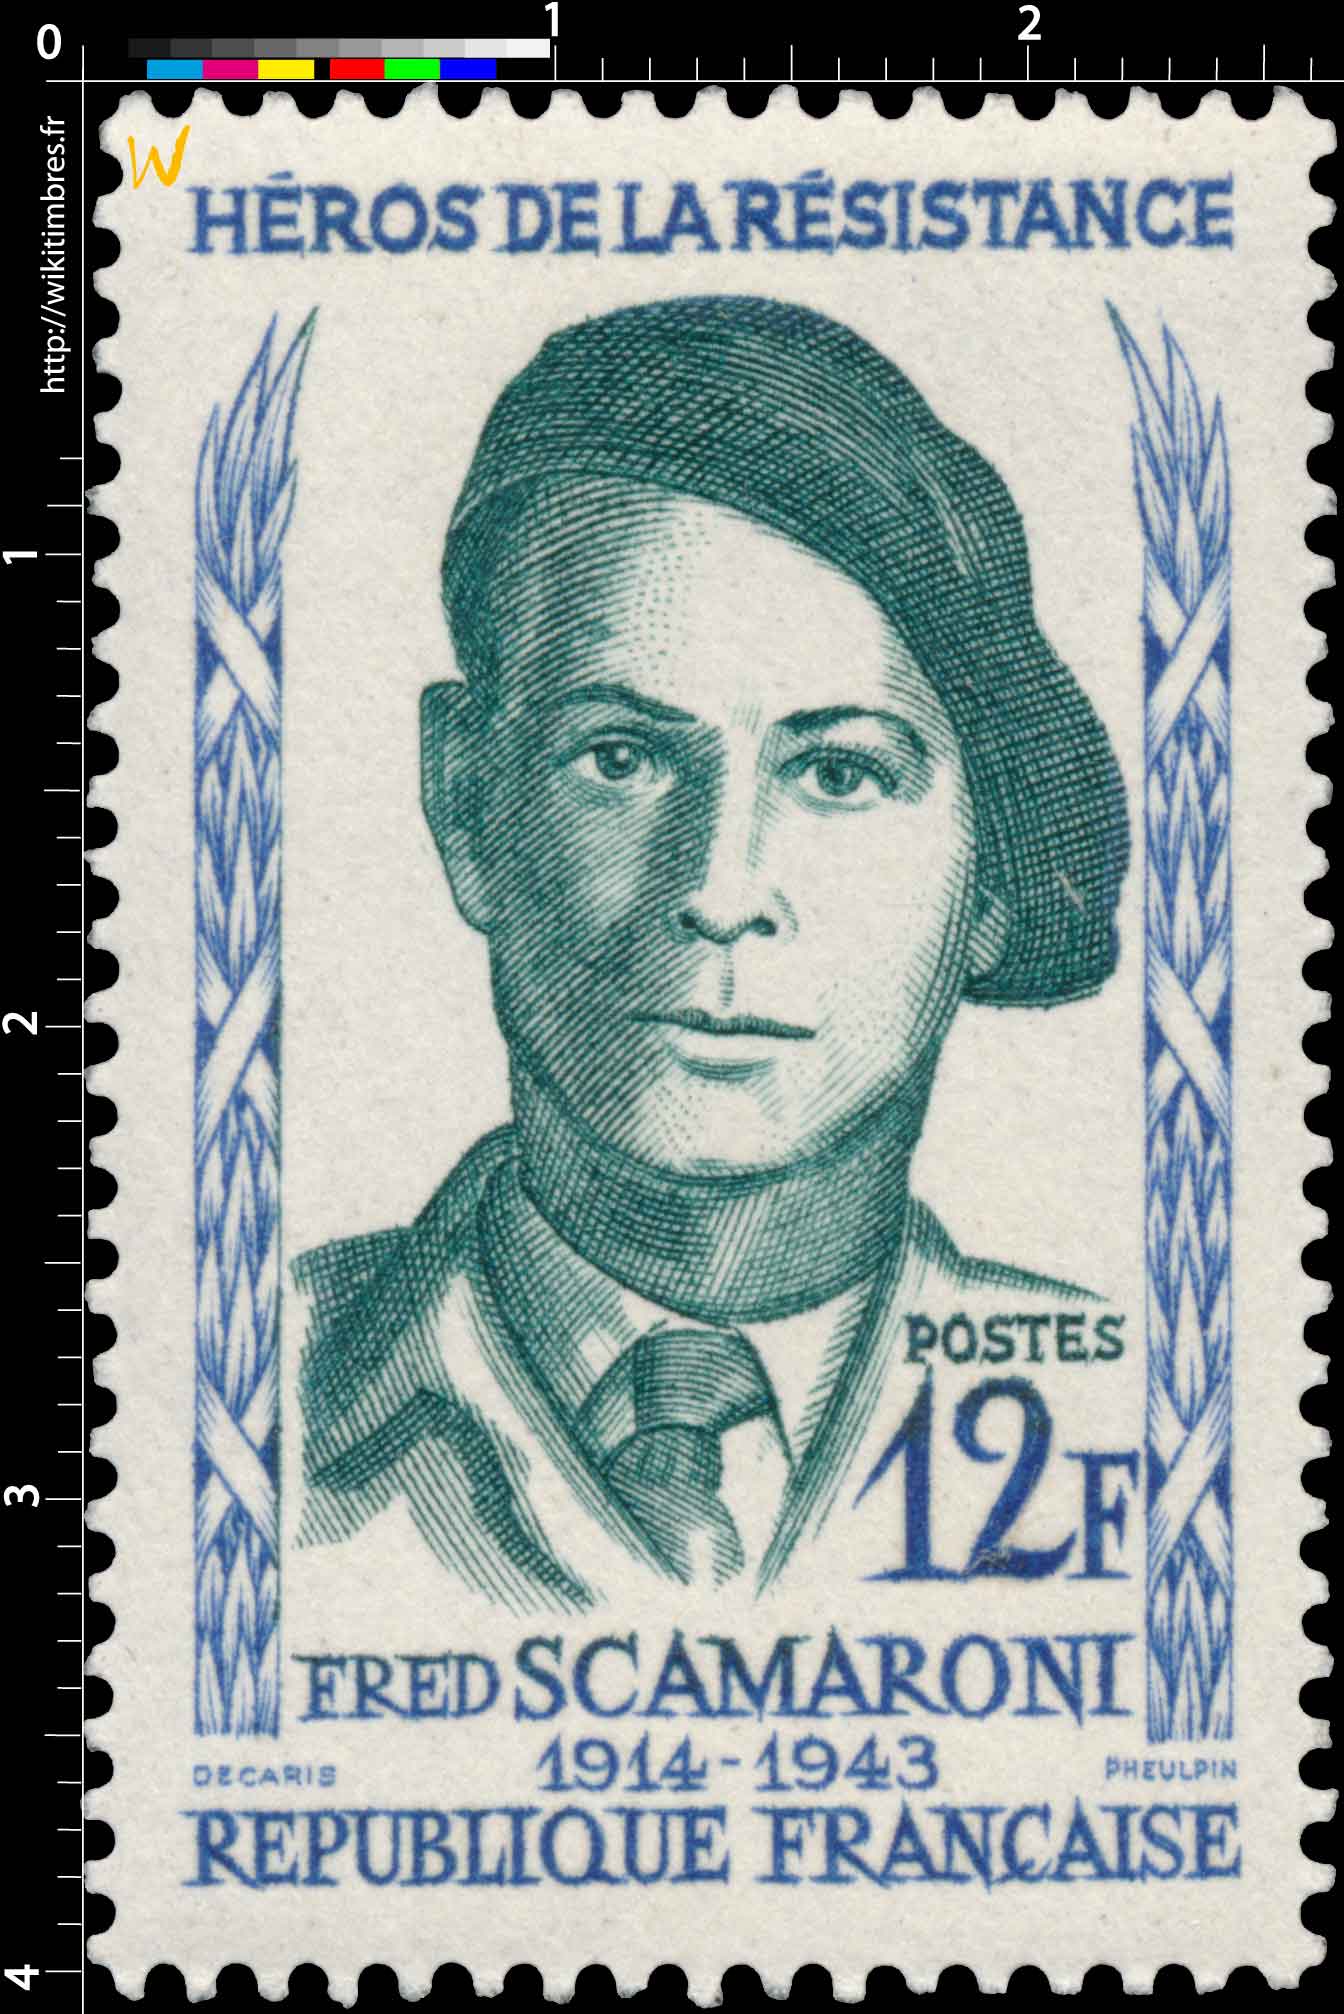 HÉROS DE LA RÉSISTANCE FRED SCAMARONI 1914-1943